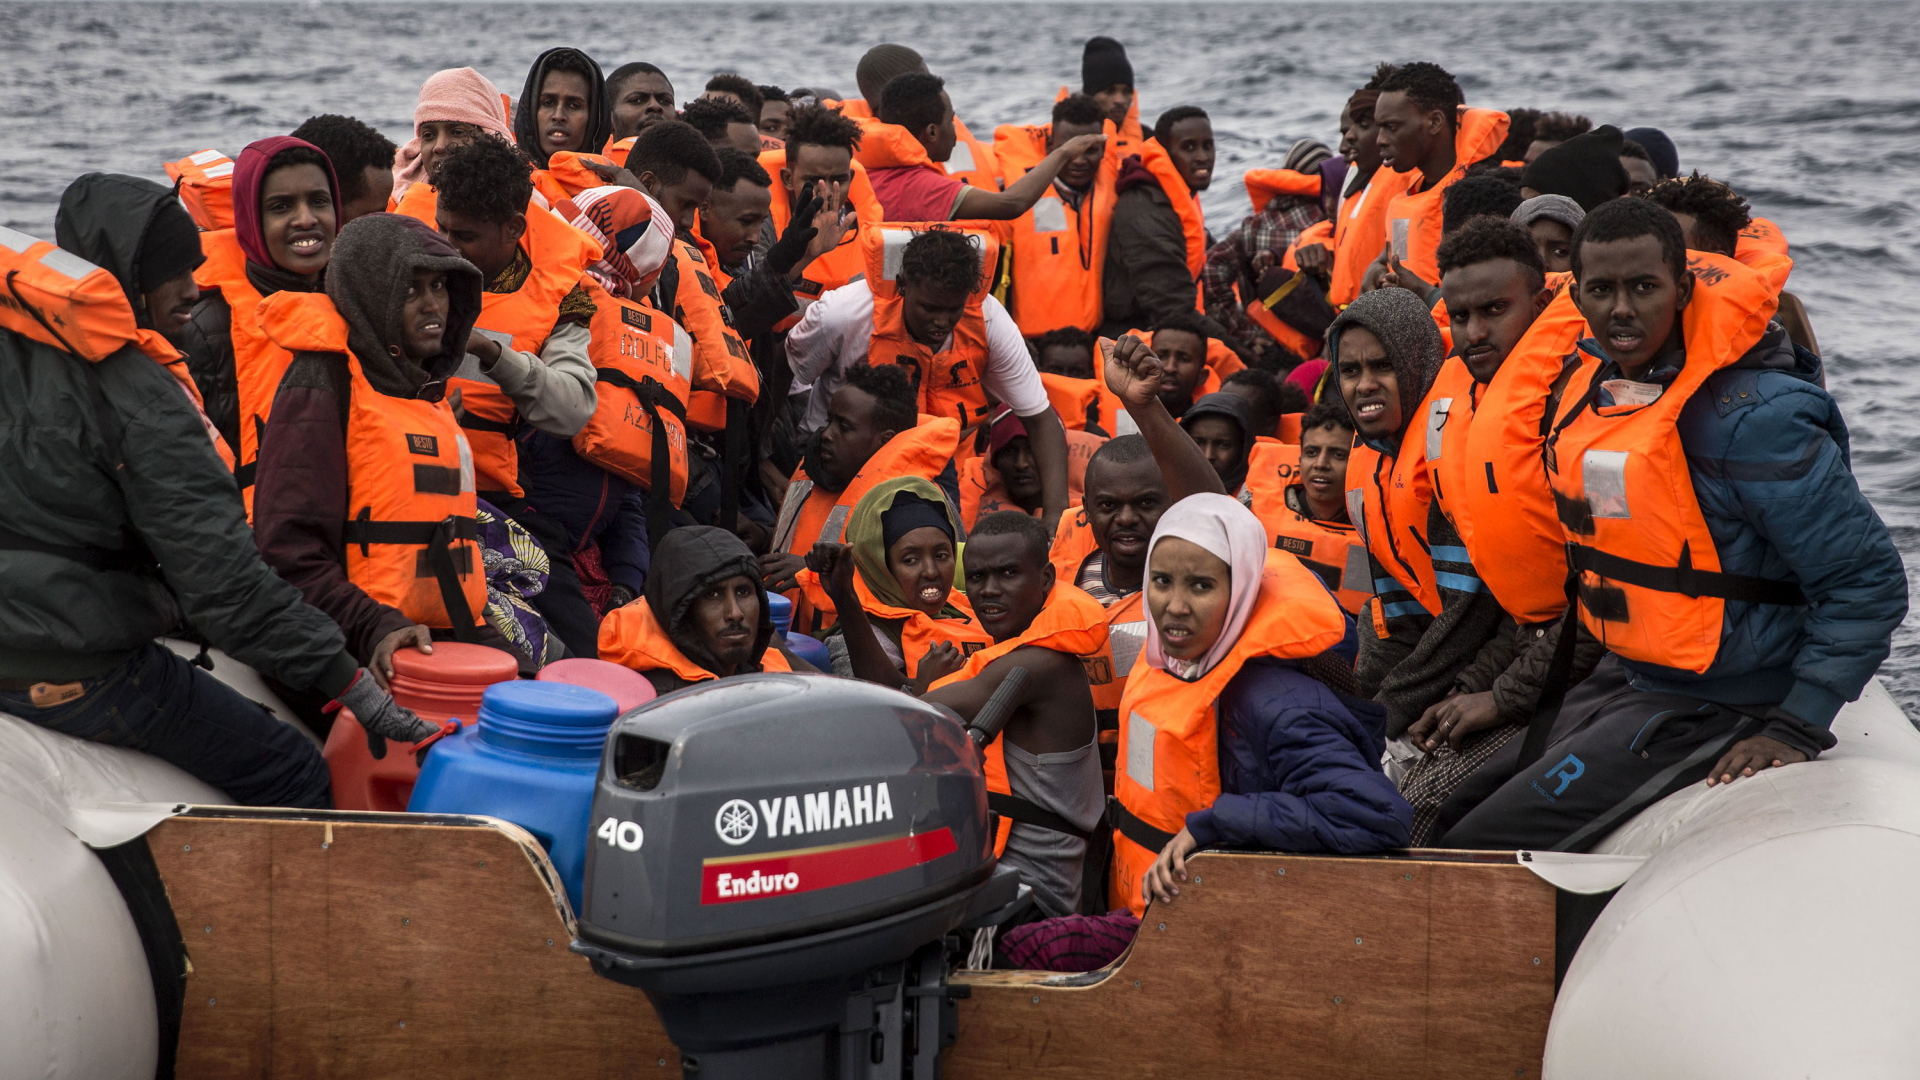 Flüchtlinge sitzen im Februar 2018 in orangen Rettungswesten in einem völlig überfüllten Schlauchboot auf dem Mittelmeer. | dpa